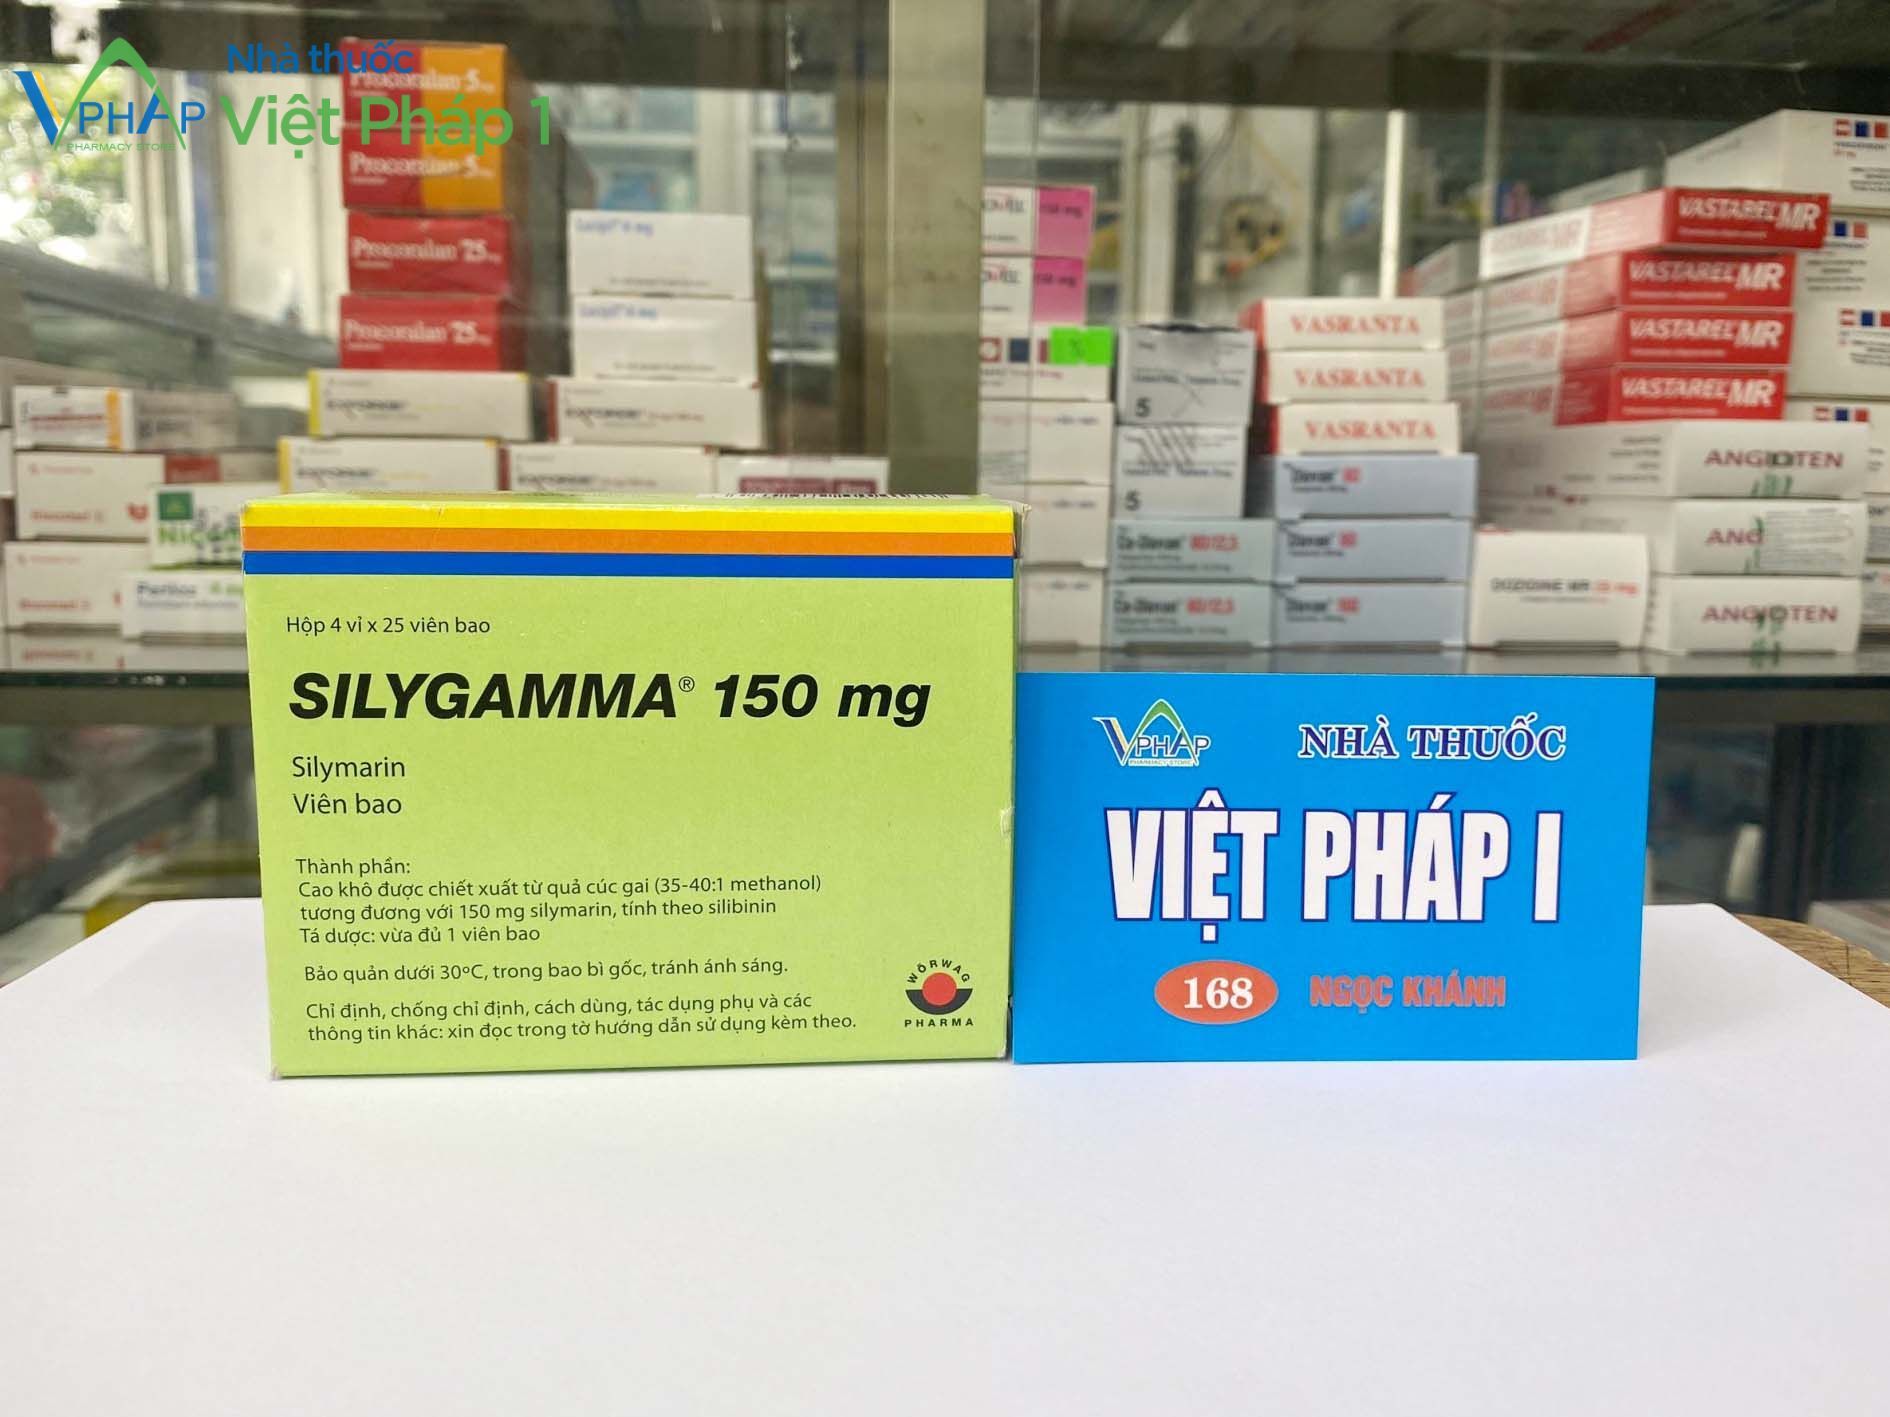 Hình ảnh Silygamma được chụp tại Nhà thuốc Việt Pháp 1